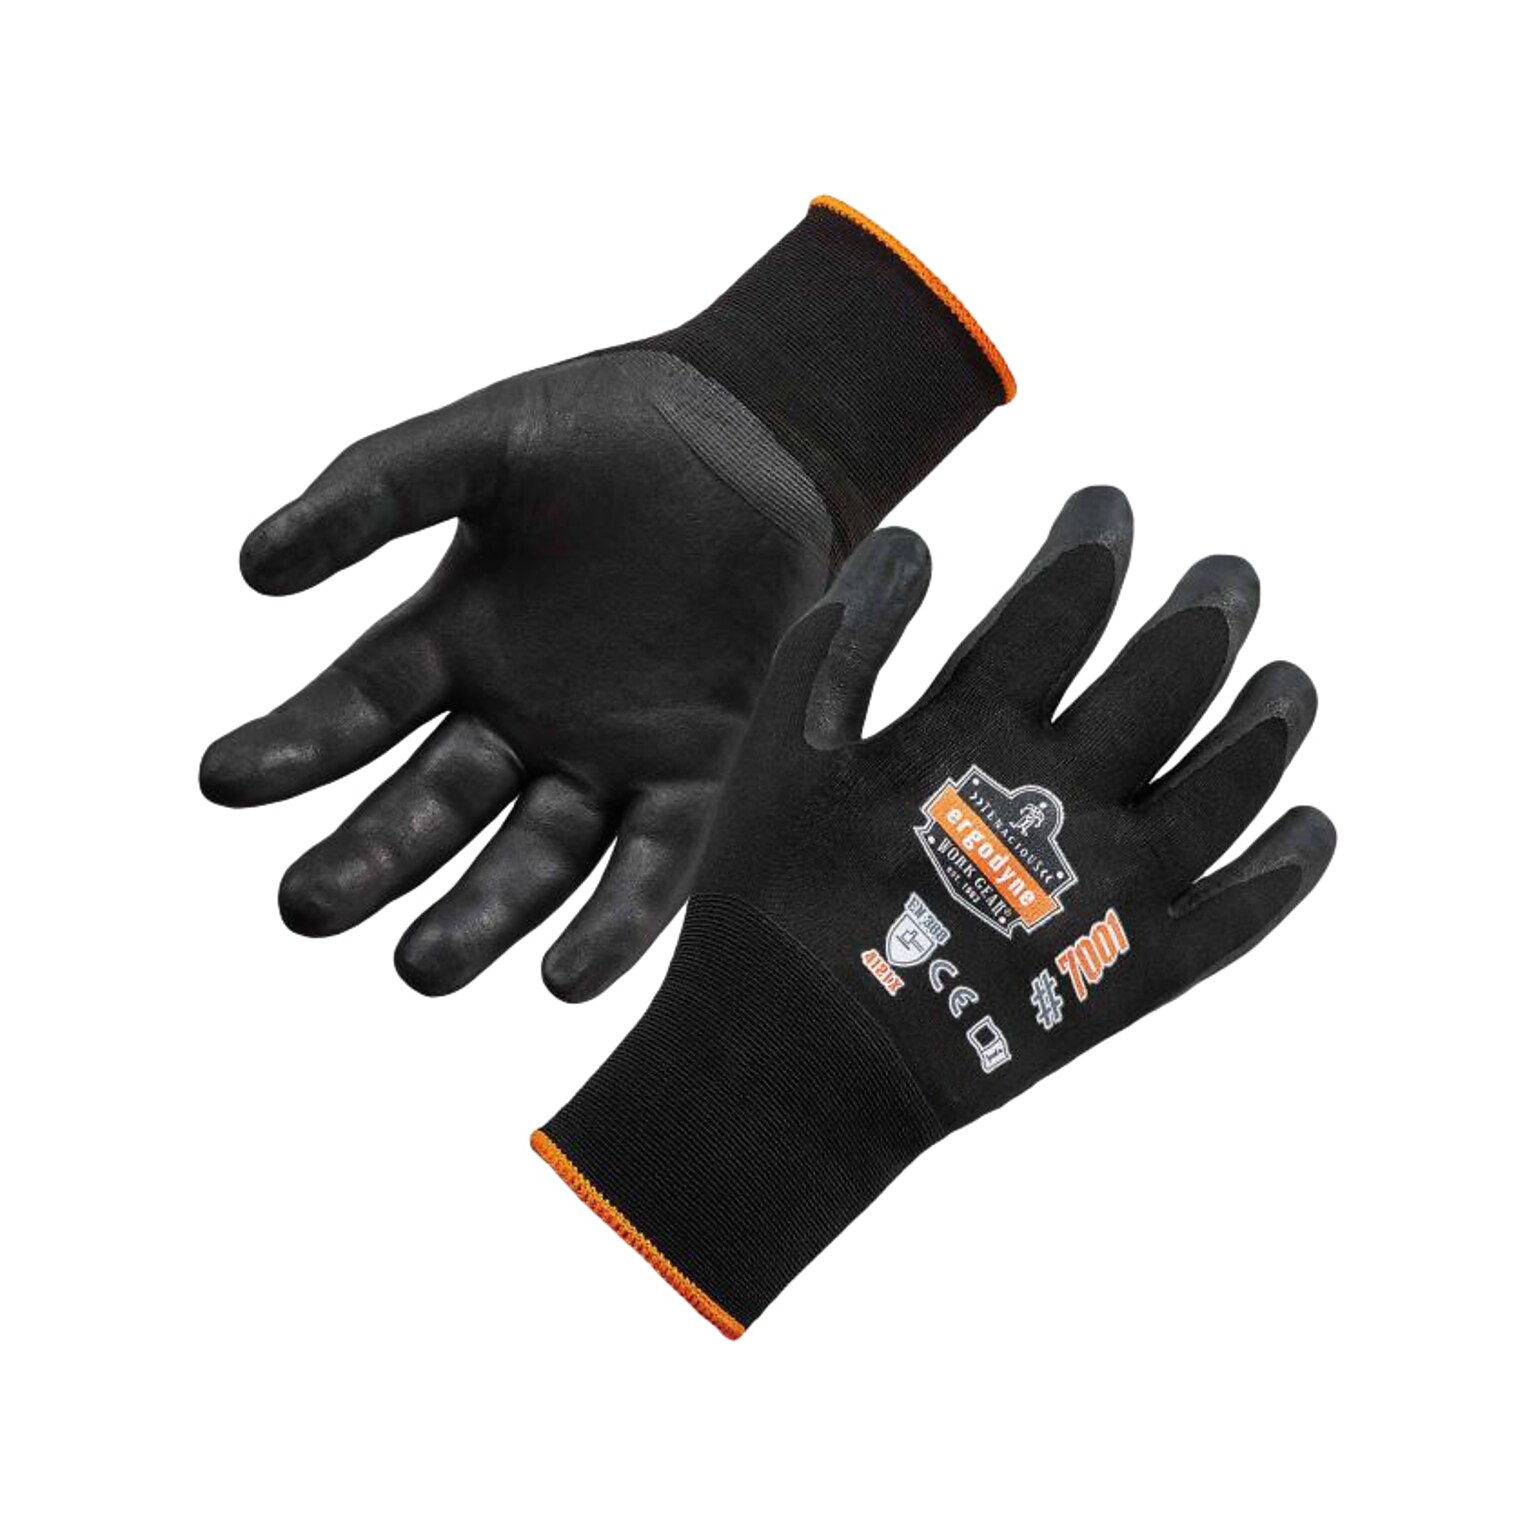 Ergodyne ProFlex 7001 Nitrile Coated Gloves, ANSI Level 3 Abrasion Resistance, Black, XXL, 12 Pairs (17956)